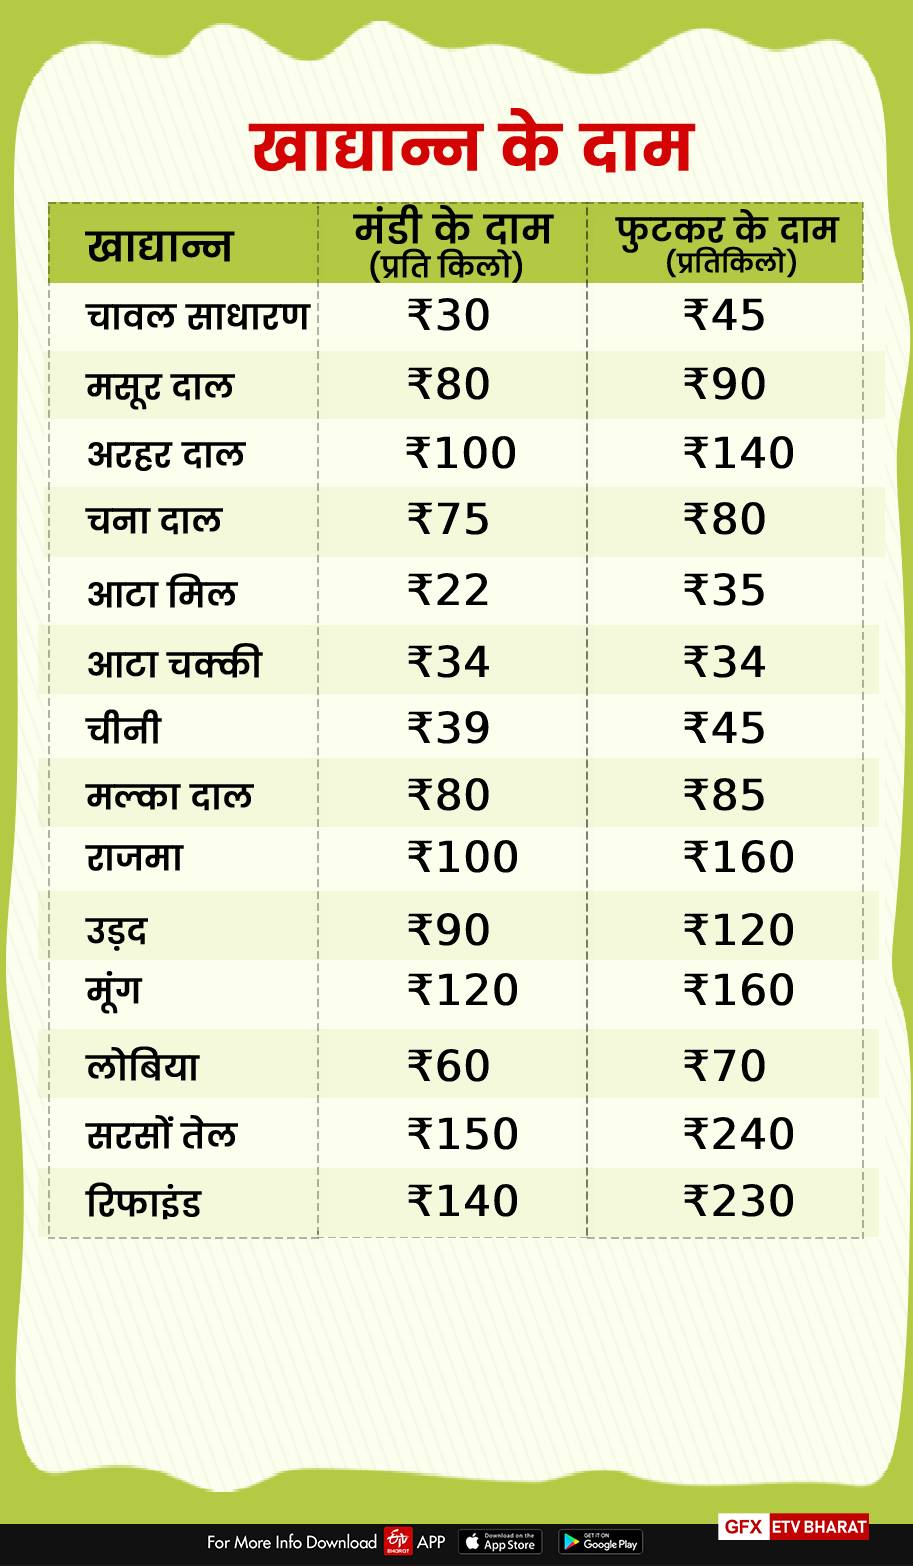 Vegetables prices in dehradun mandi